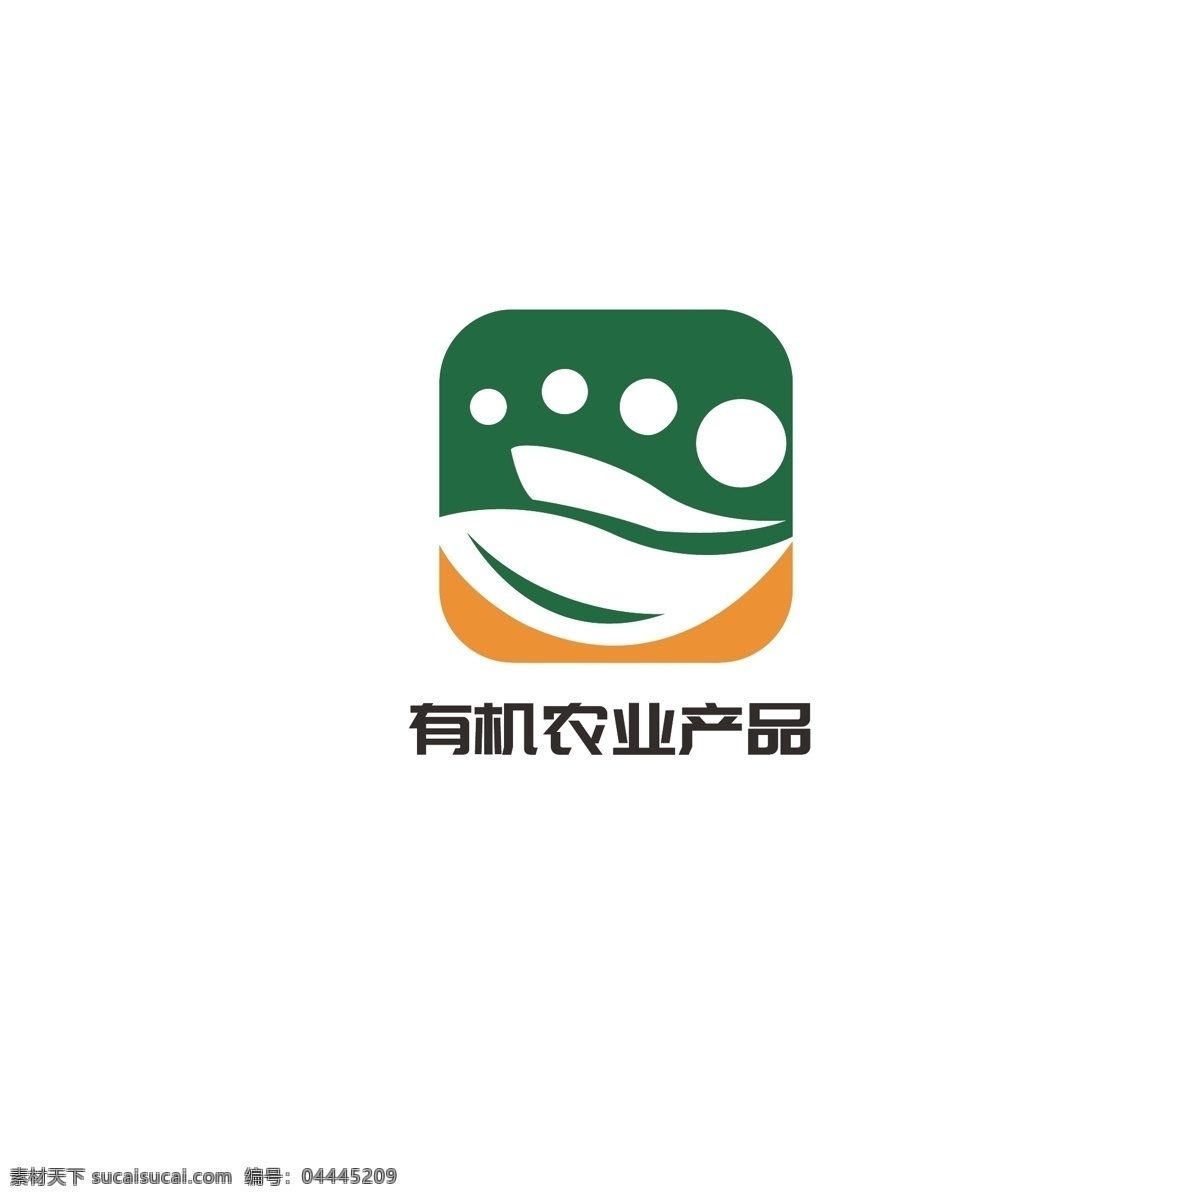 有机 农业 产品 logo 简约 叶子 蔬菜 绿色 健康 豆角